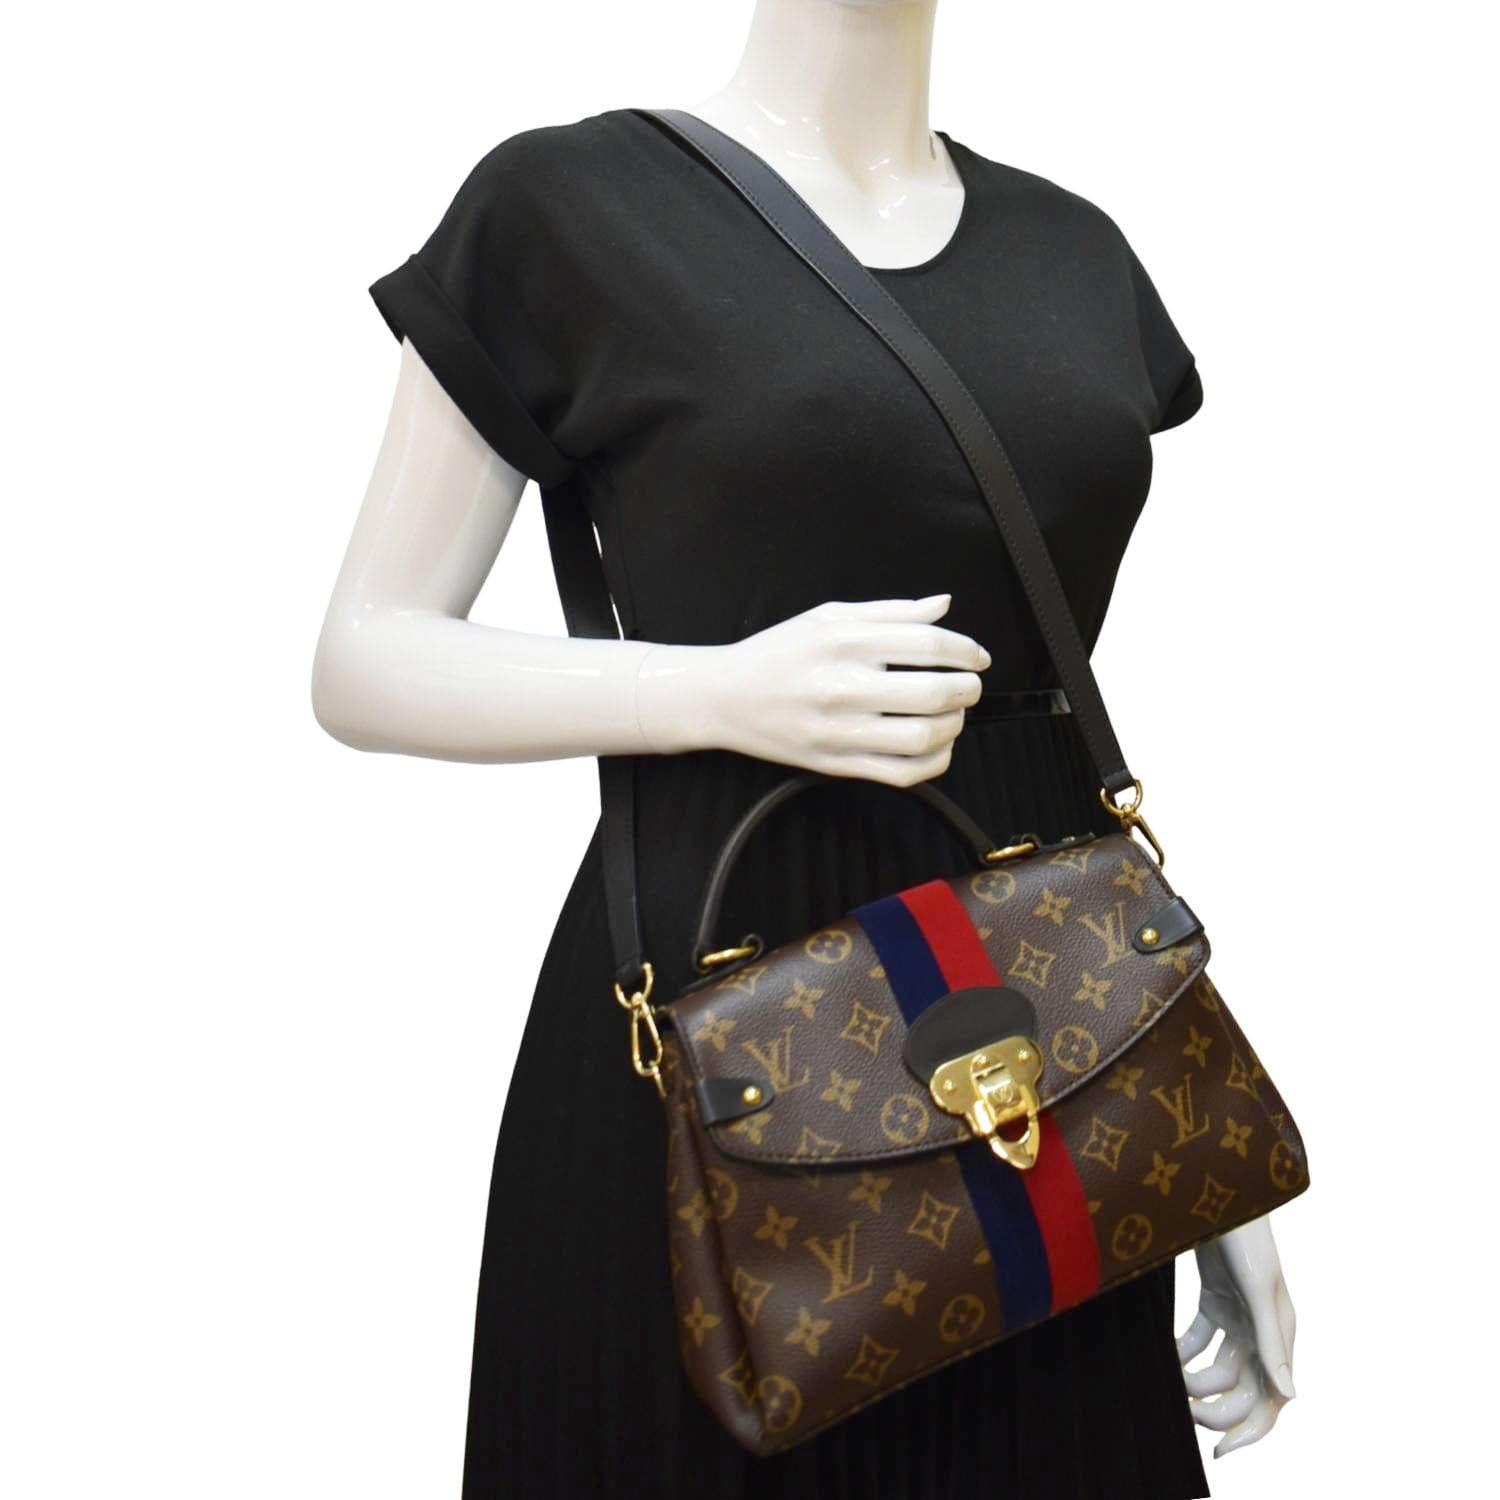 Louis Vuitton Georges Leather Handbag